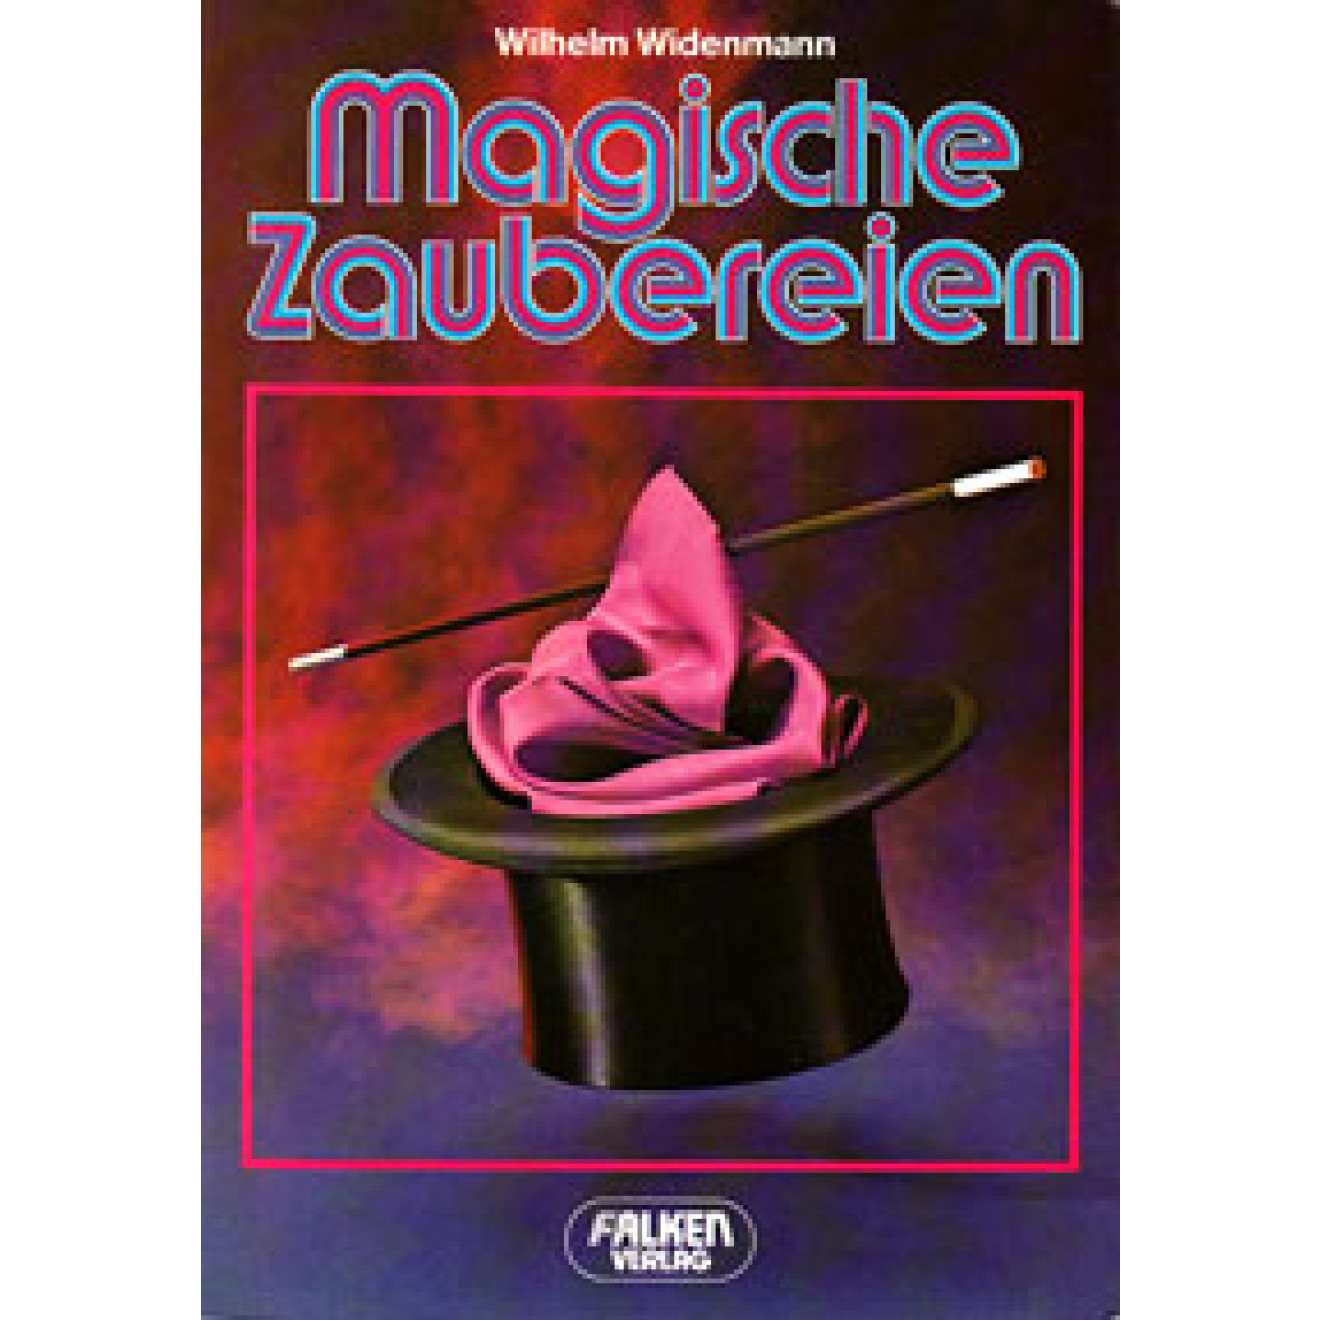 Magische Zaubereien (1983)